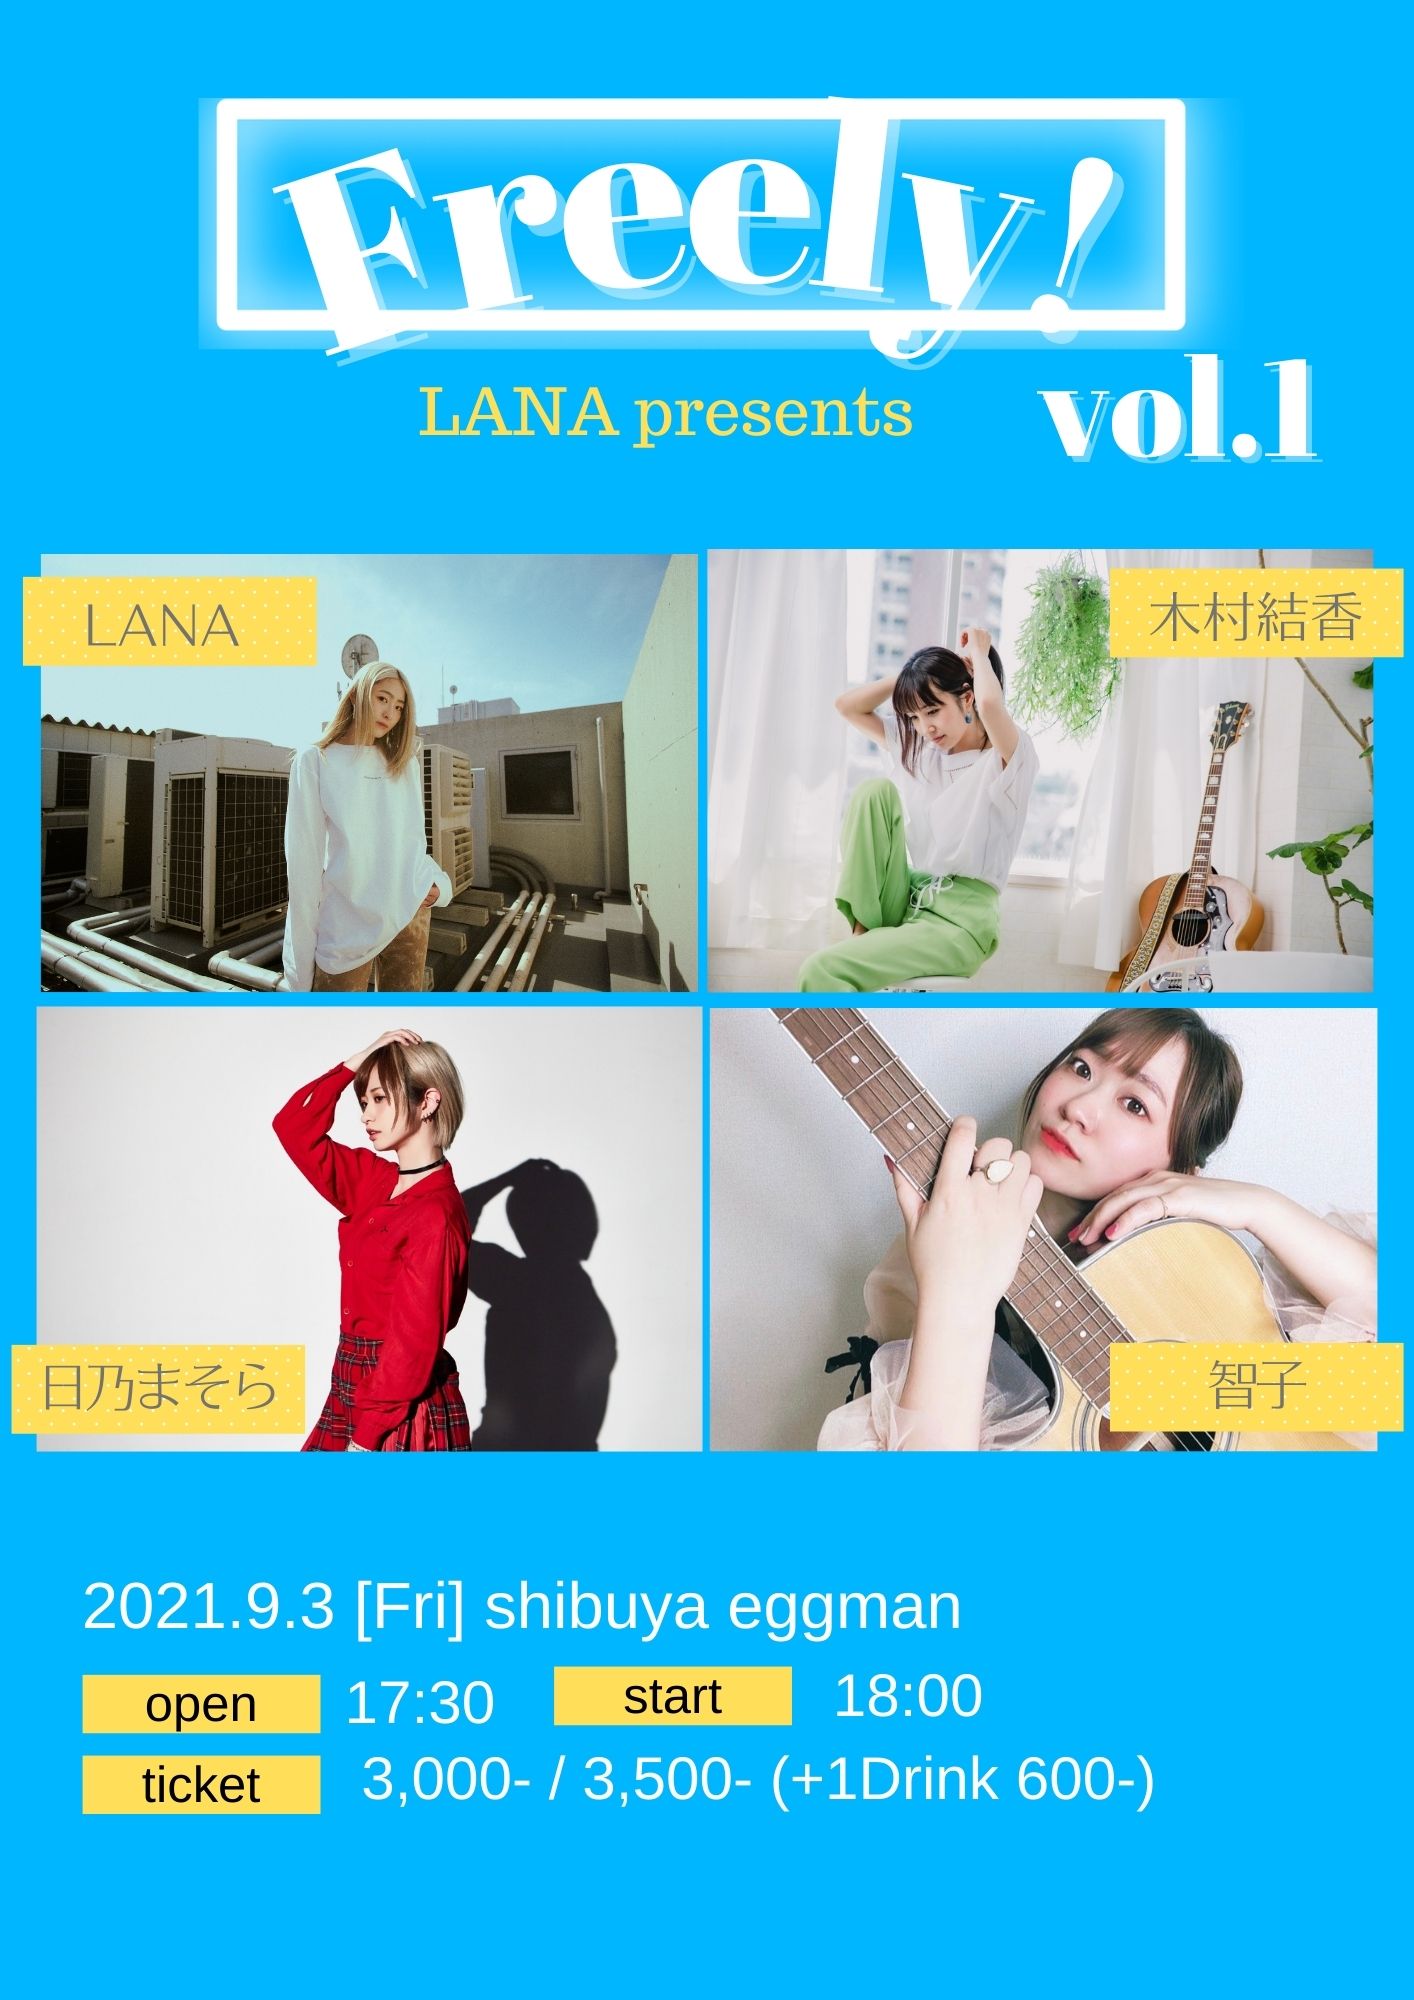 LANA presents Freely! vol.1